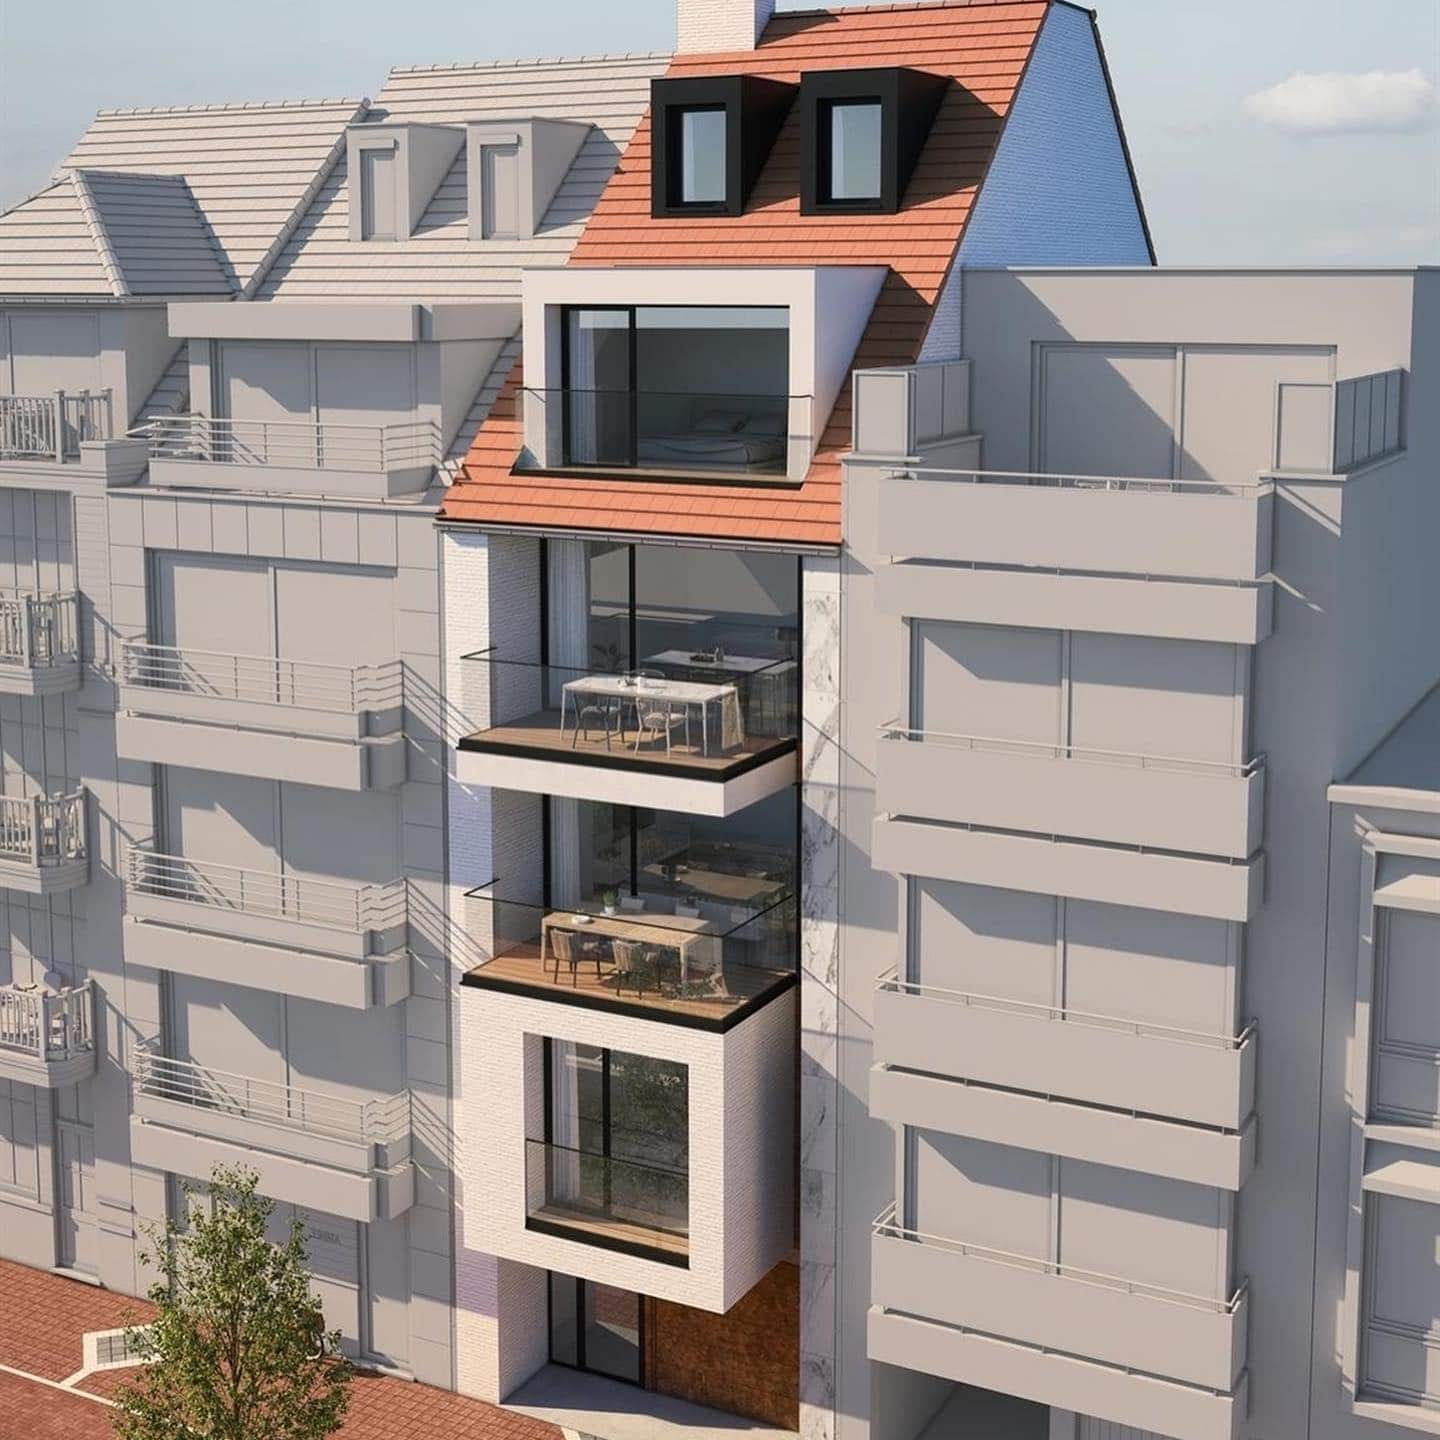 Nieuwbouw meergezinswoning op 2 locaties in Knokke - Architect @pietbailyu @project_architects - Ontwikkelaar